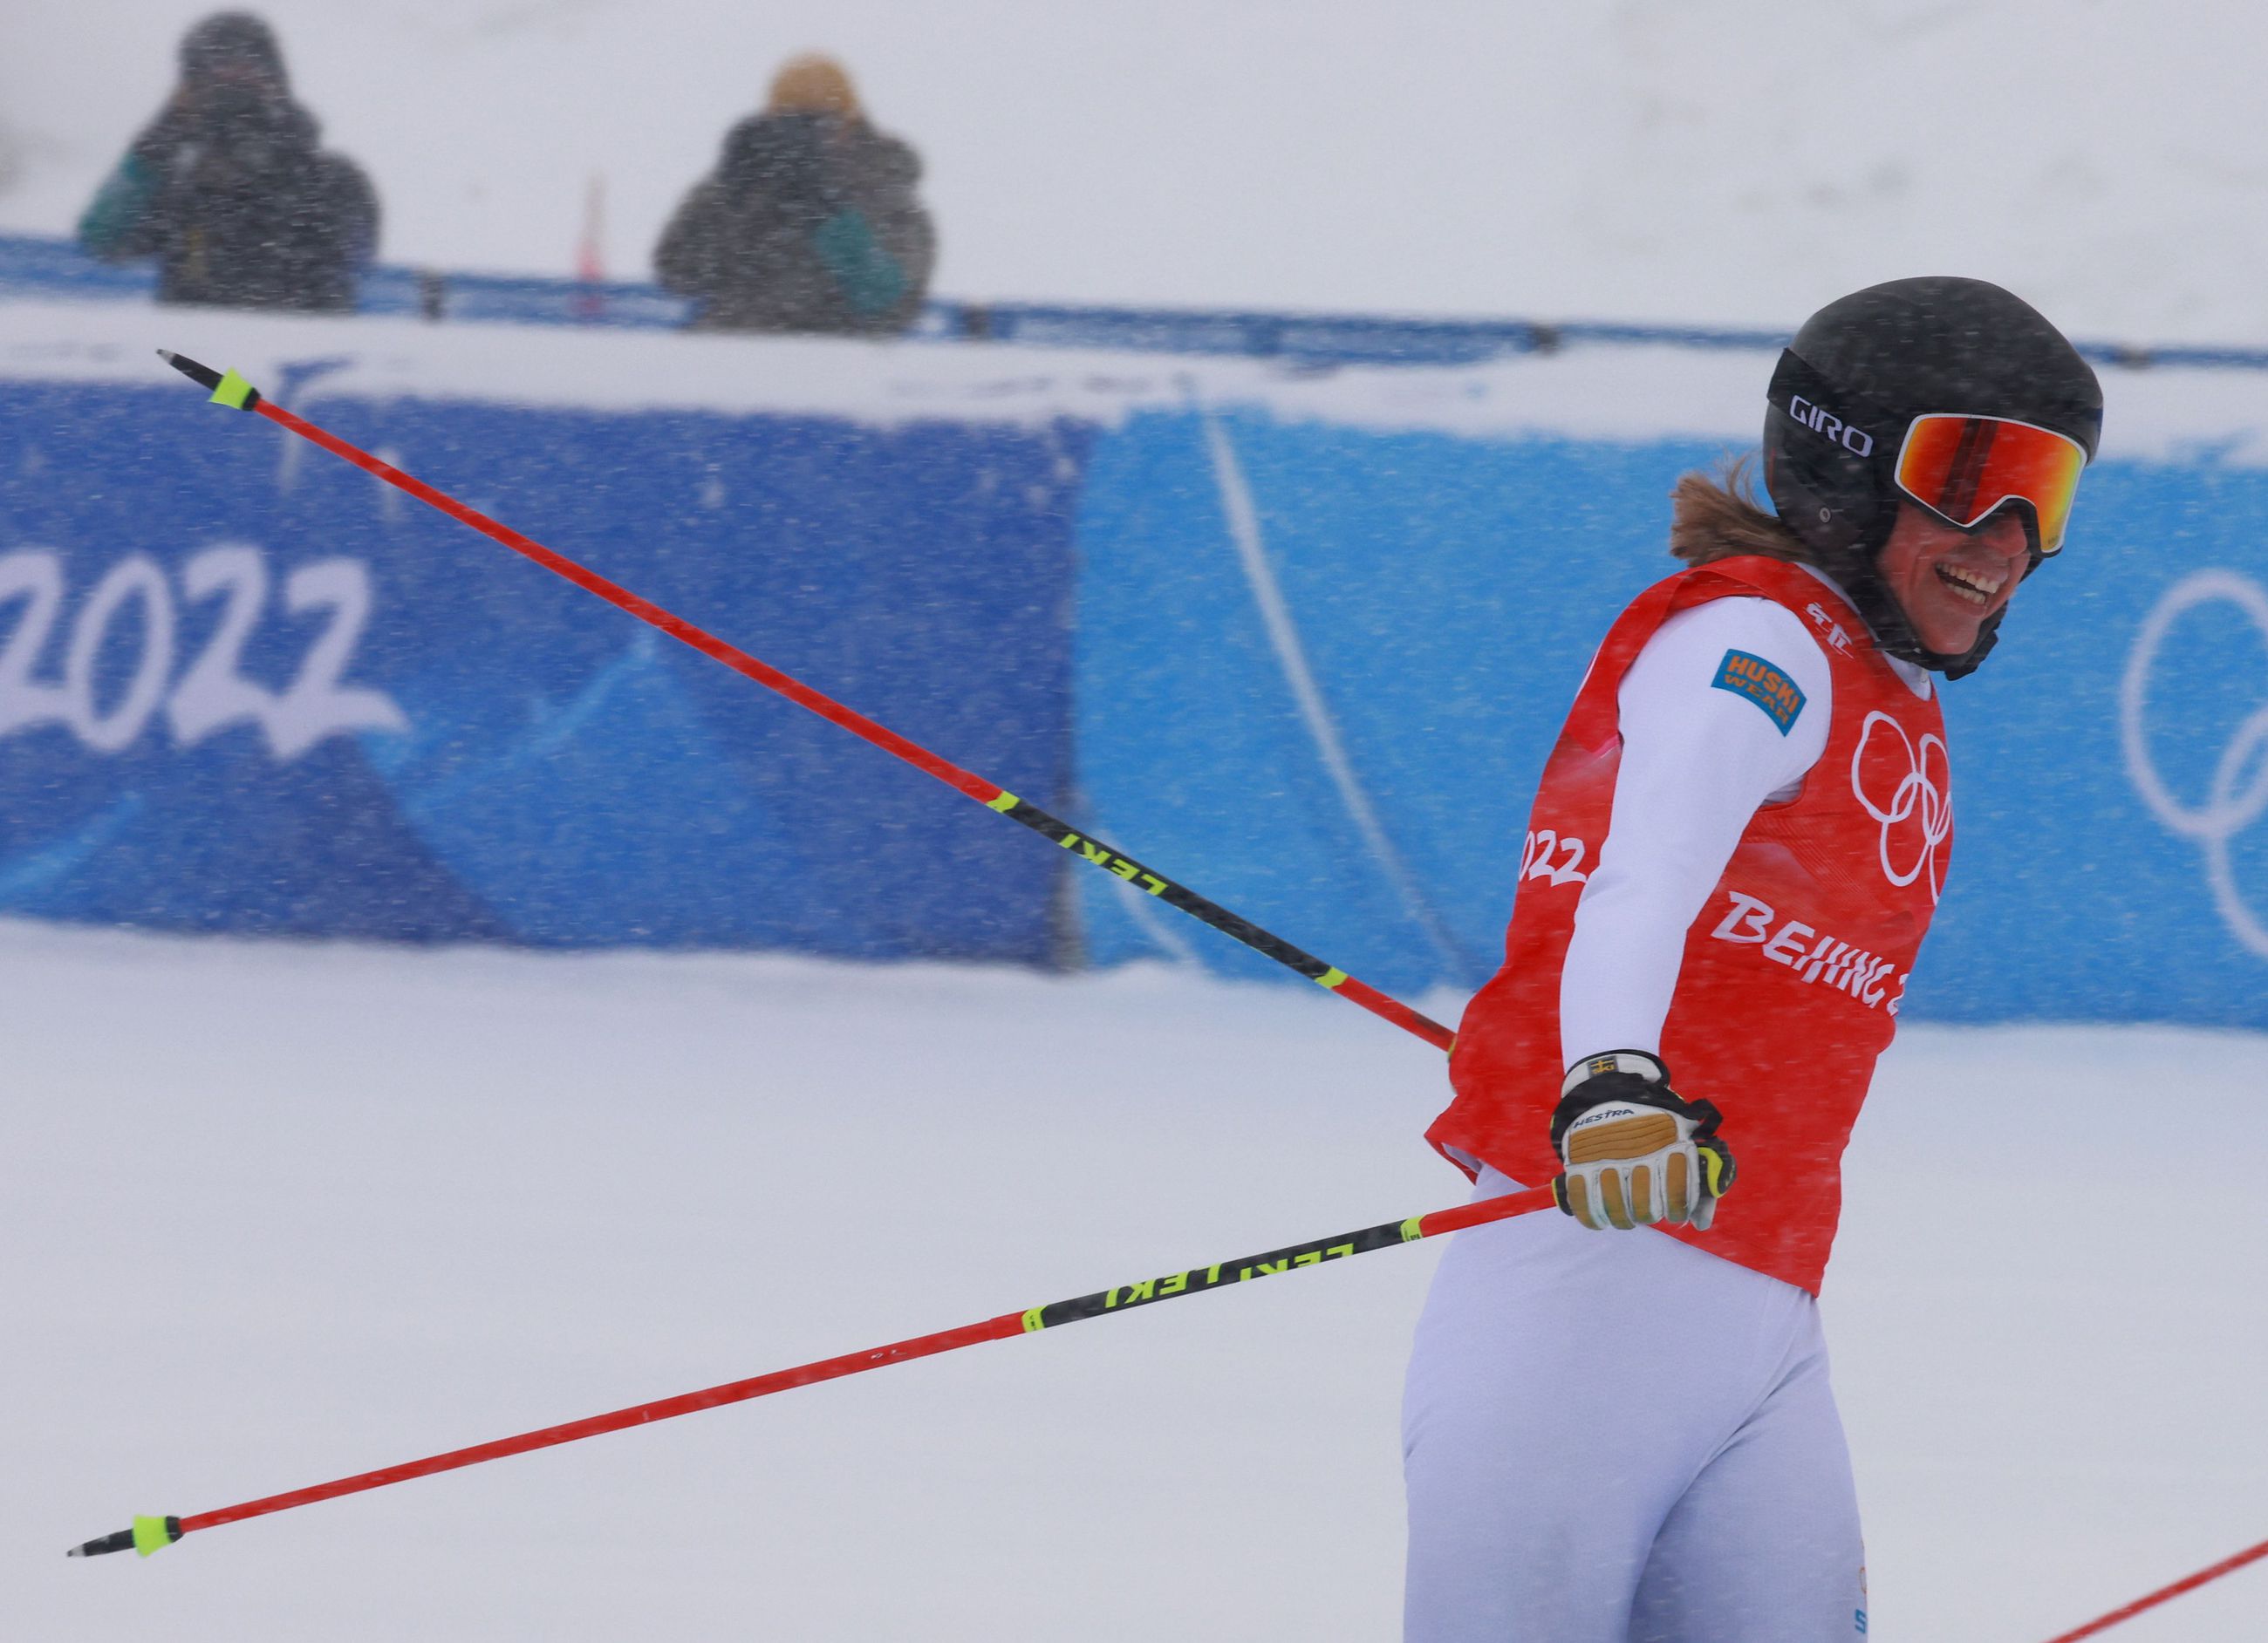 Hiihto ja jääkiekko kannattelevat Suomen mitalisaaliita  talviolympialaisissa – samaan aikaan Ruotsi ja Norja ovat matkalla  ennätyslukemiinsa | Kaleva